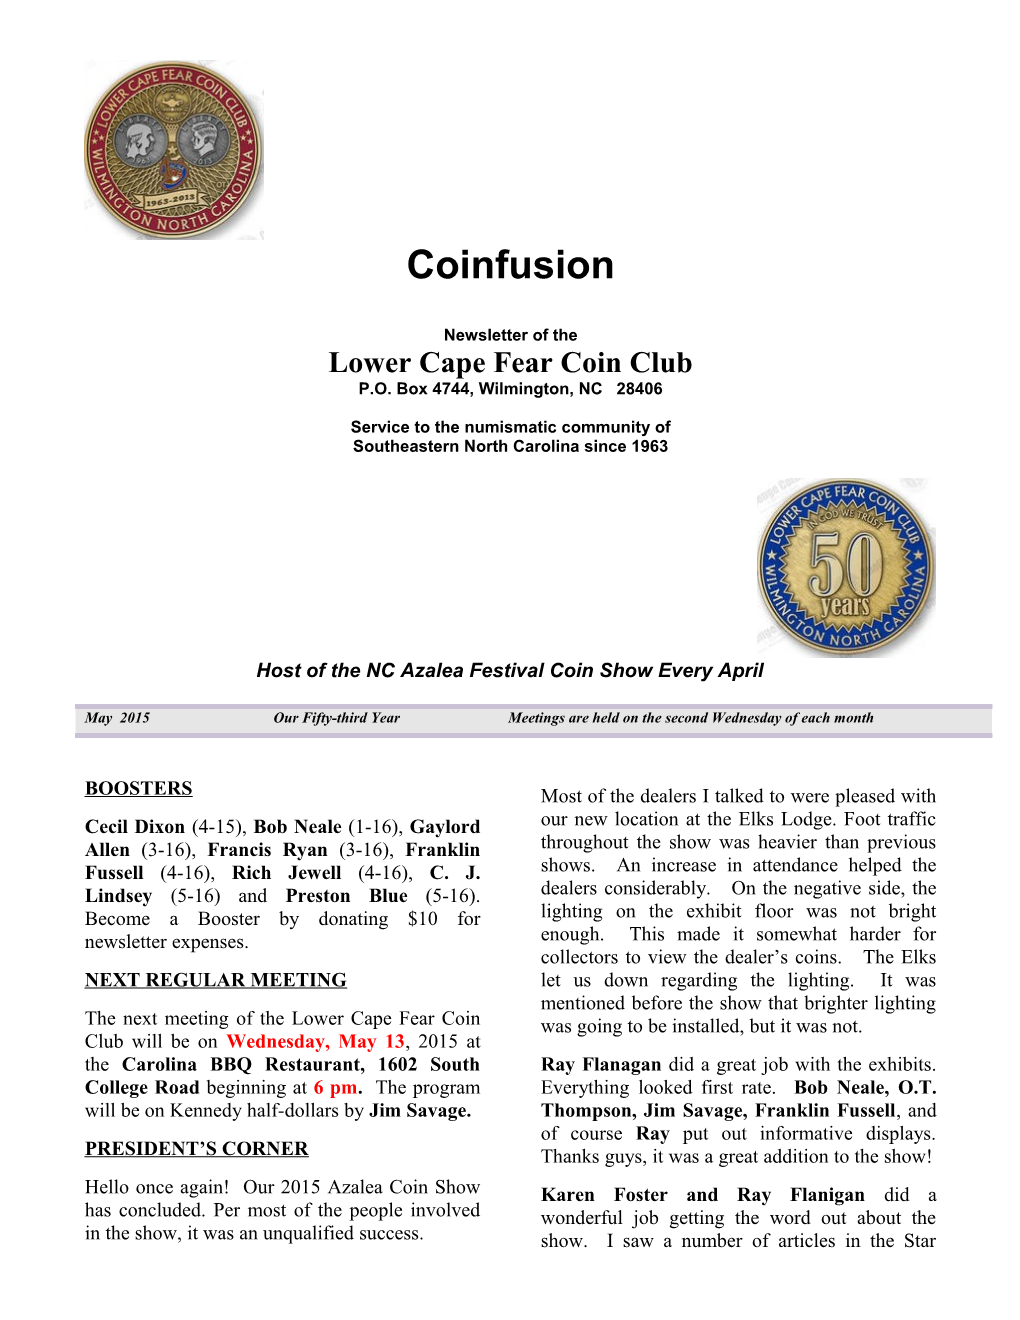 Lower Cape Fear Coin Club